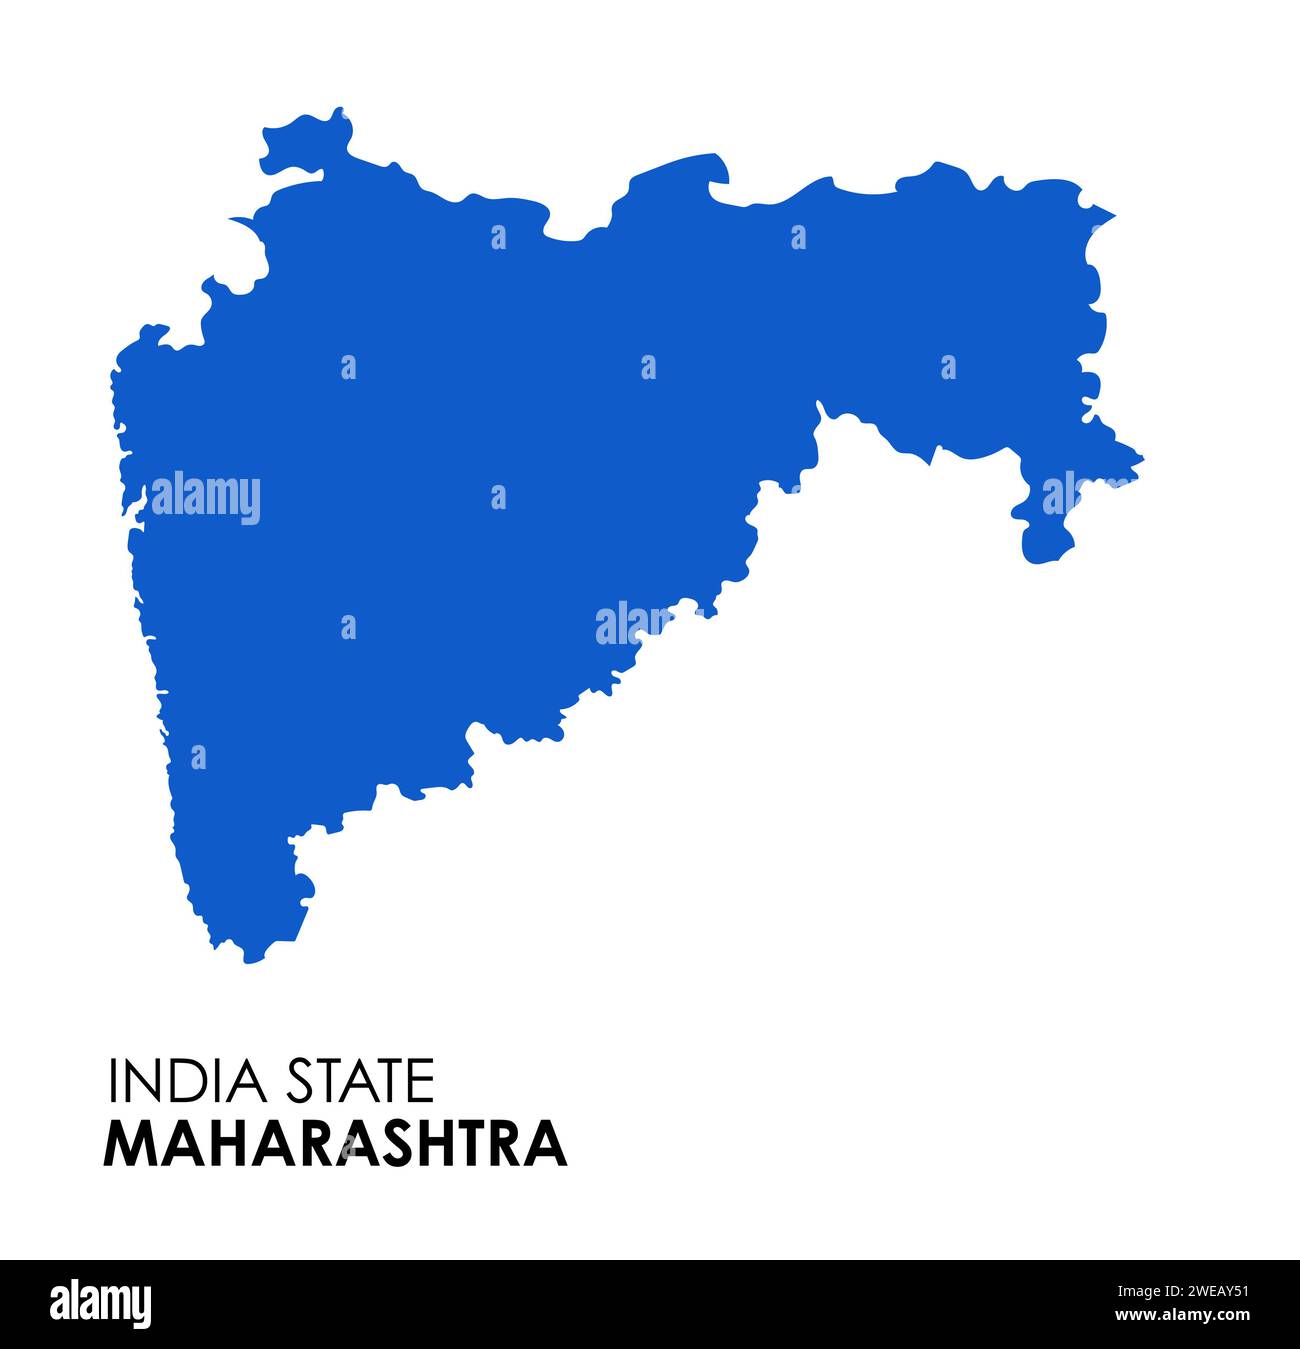 Maharashtra map of Indian state. Maharashtra map vector illustration. White background. Stock Photo